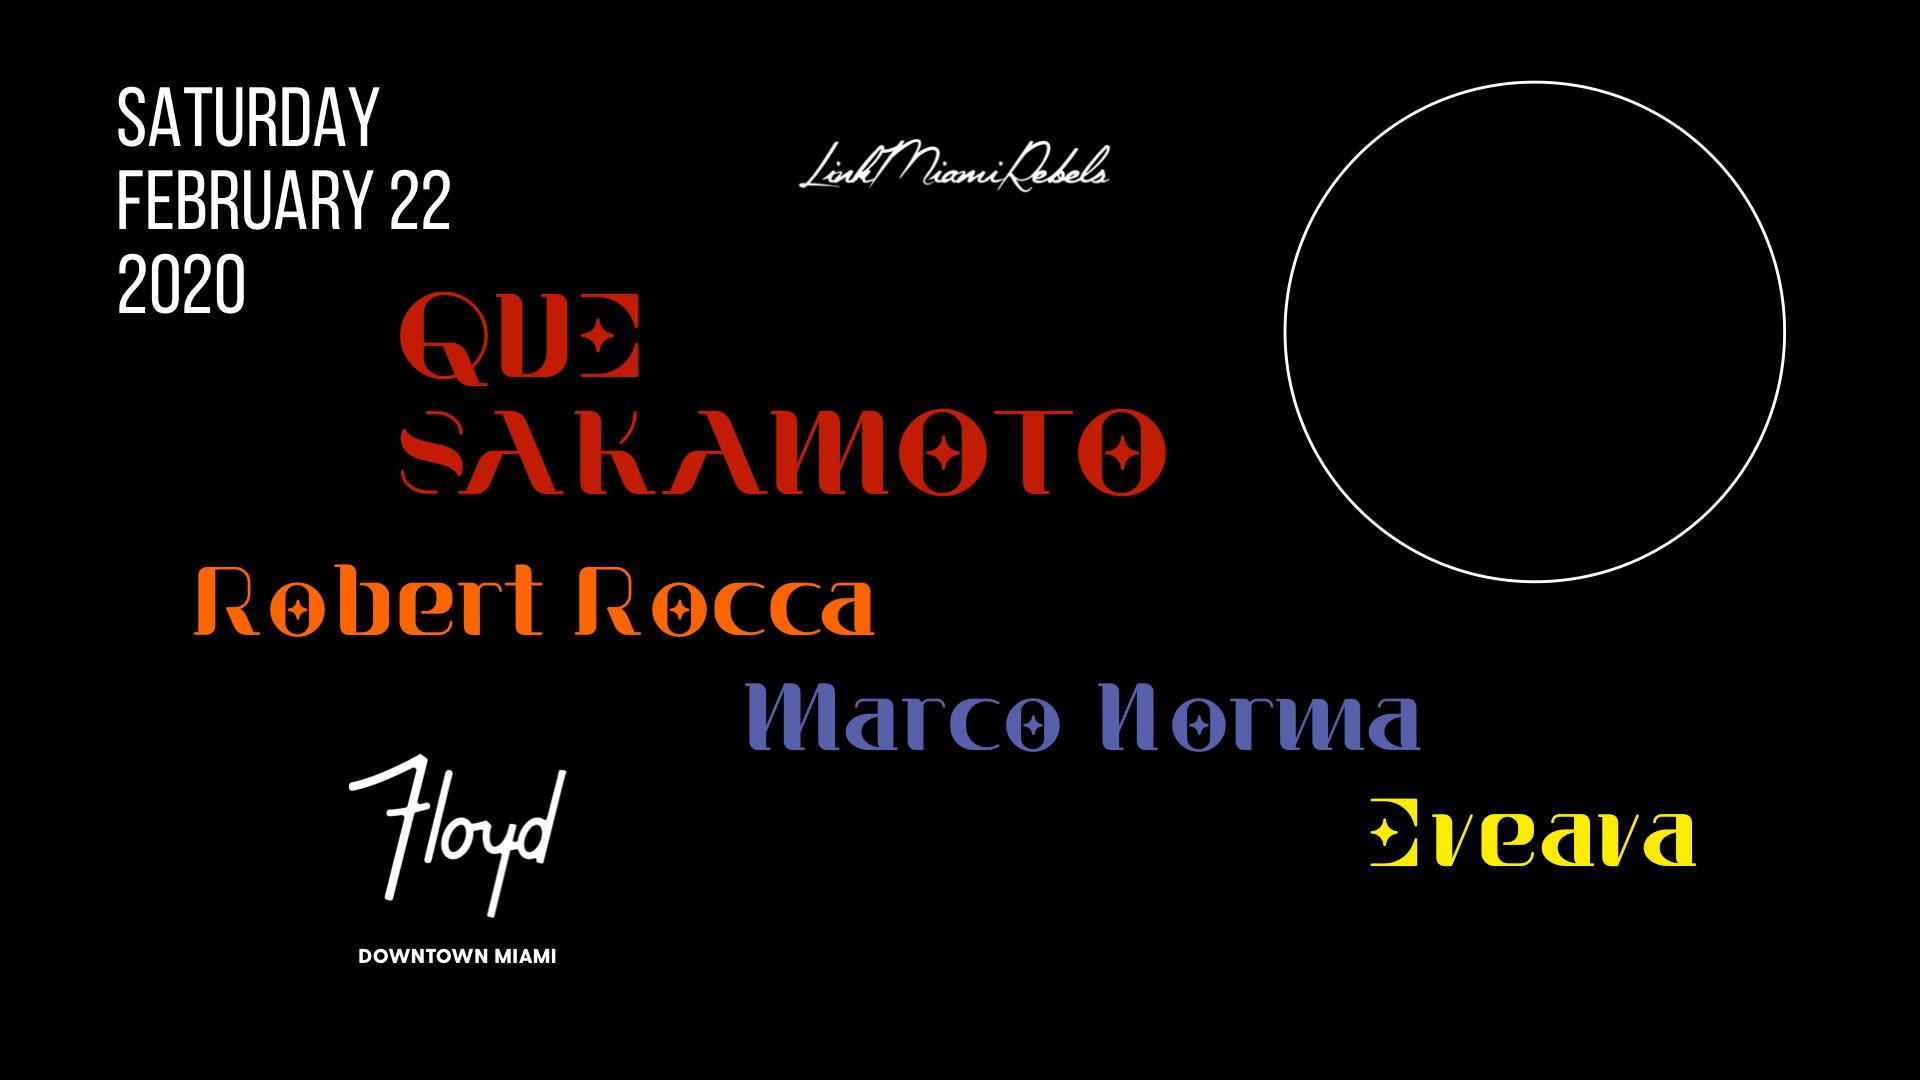 Que Sakamoto + Robert Rocca + Marco Norma + Eveava